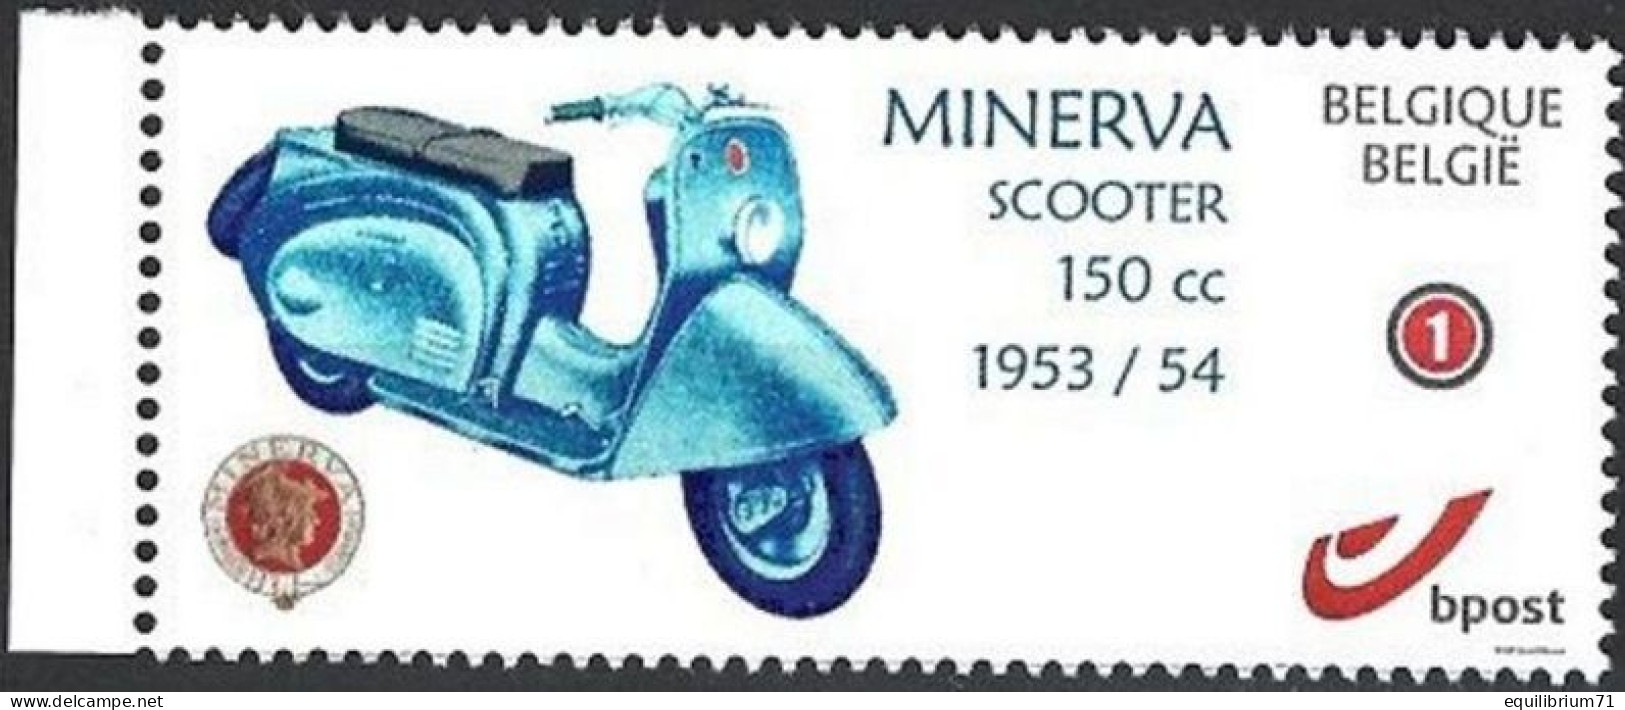 DUOSTAMP** / MYSTAMP** - Minerva Scooter 150CC - 1953/1954 - Motorräder